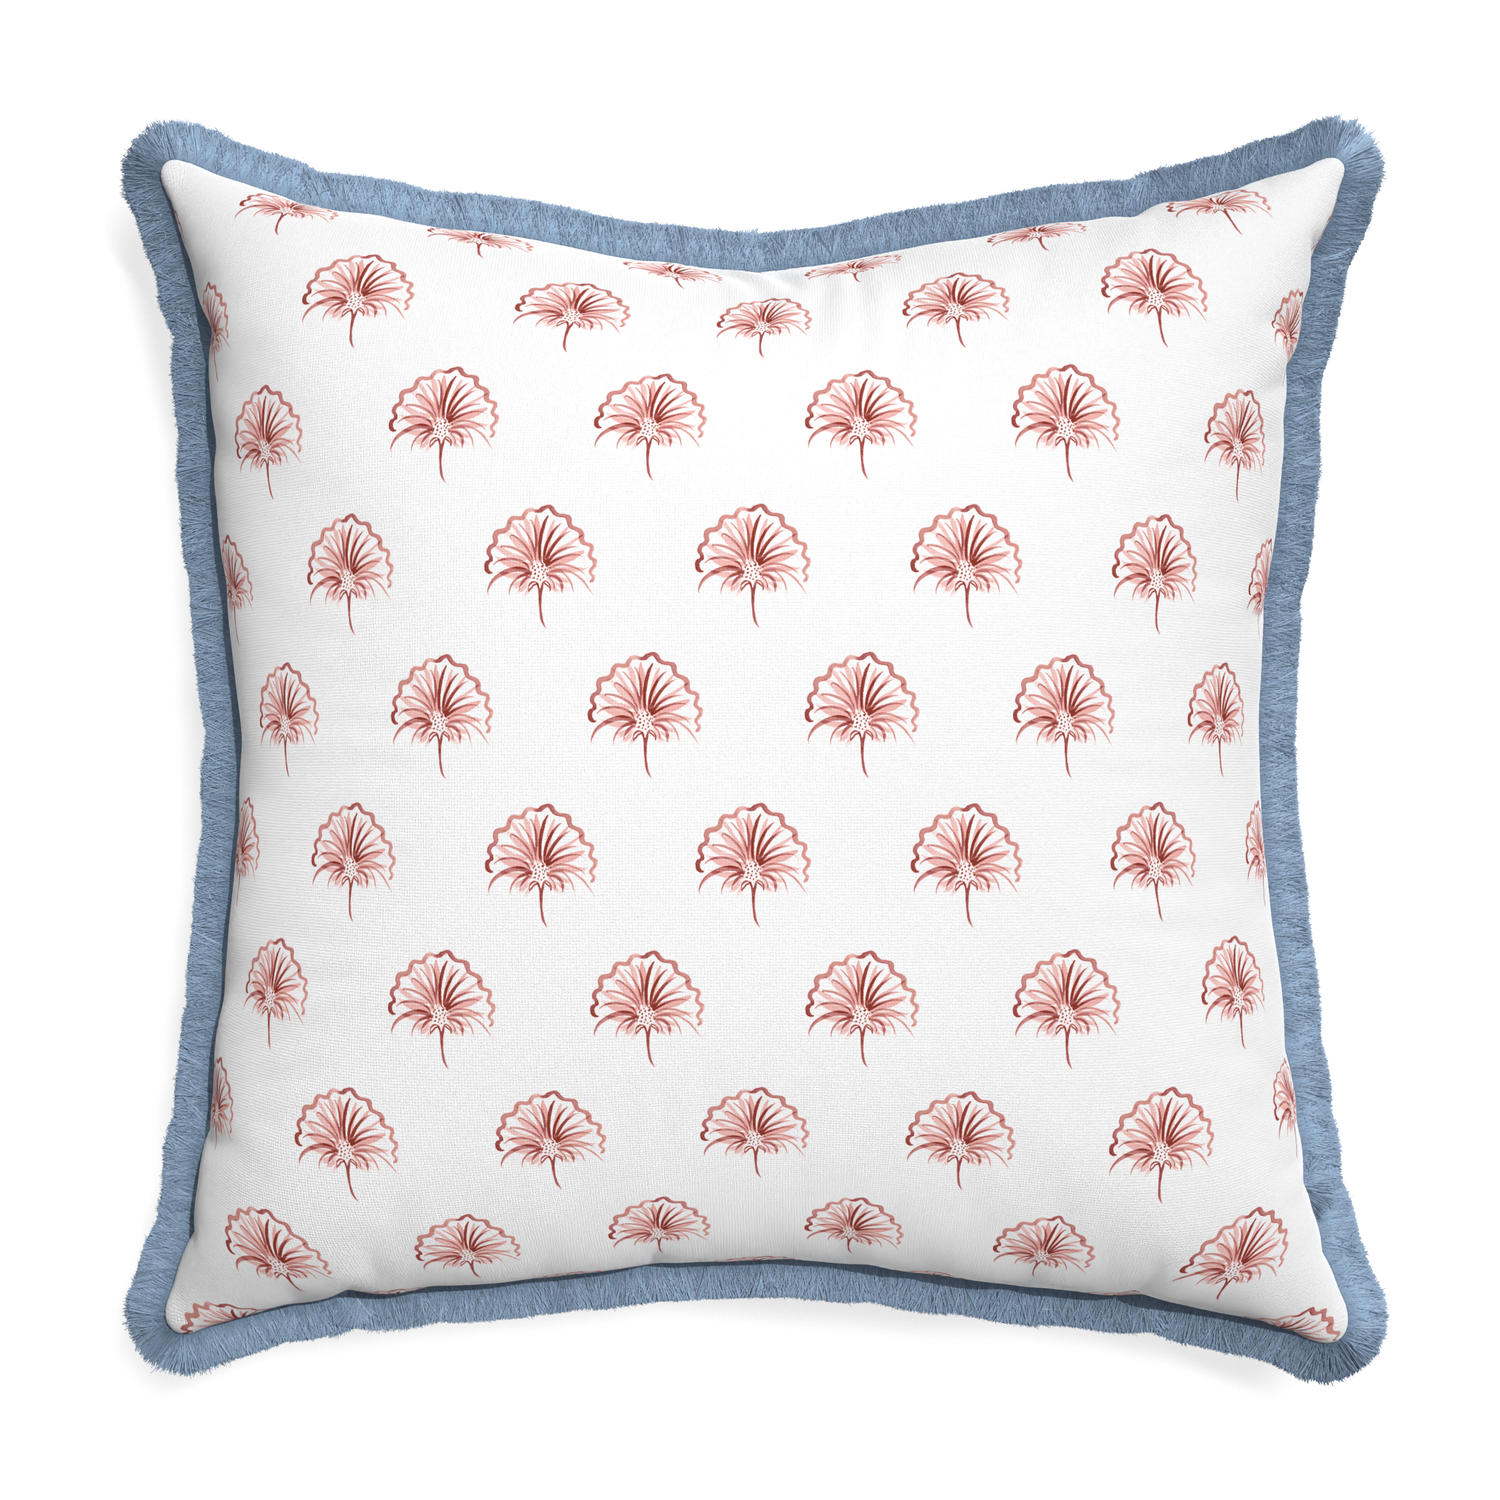 Euro-sham penelope rose custom pillow with sky fringe on white background